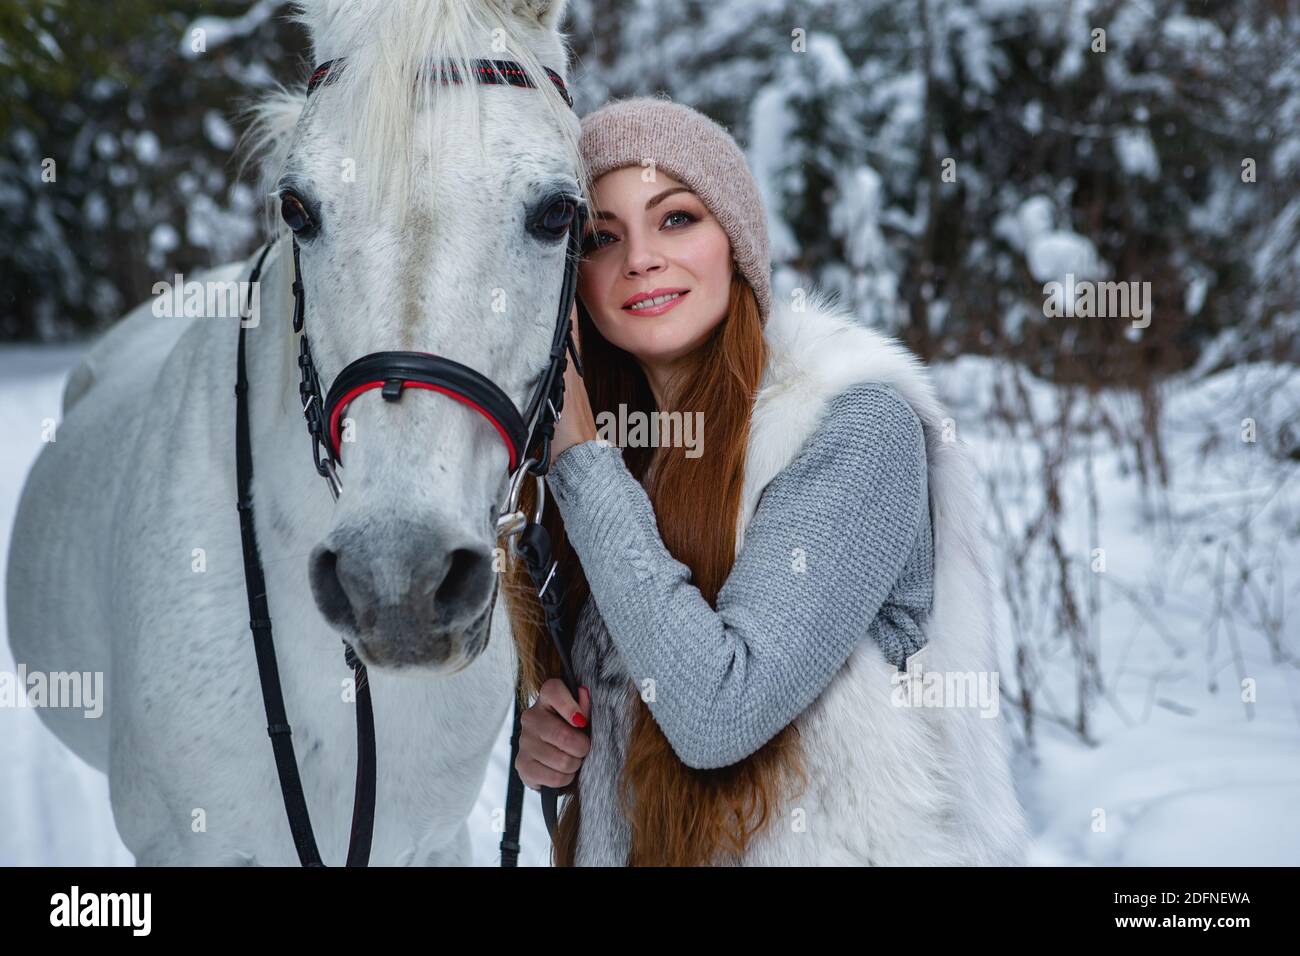 Elle tient son cheval blanc dans une forêt d'hiver Banque D'Images